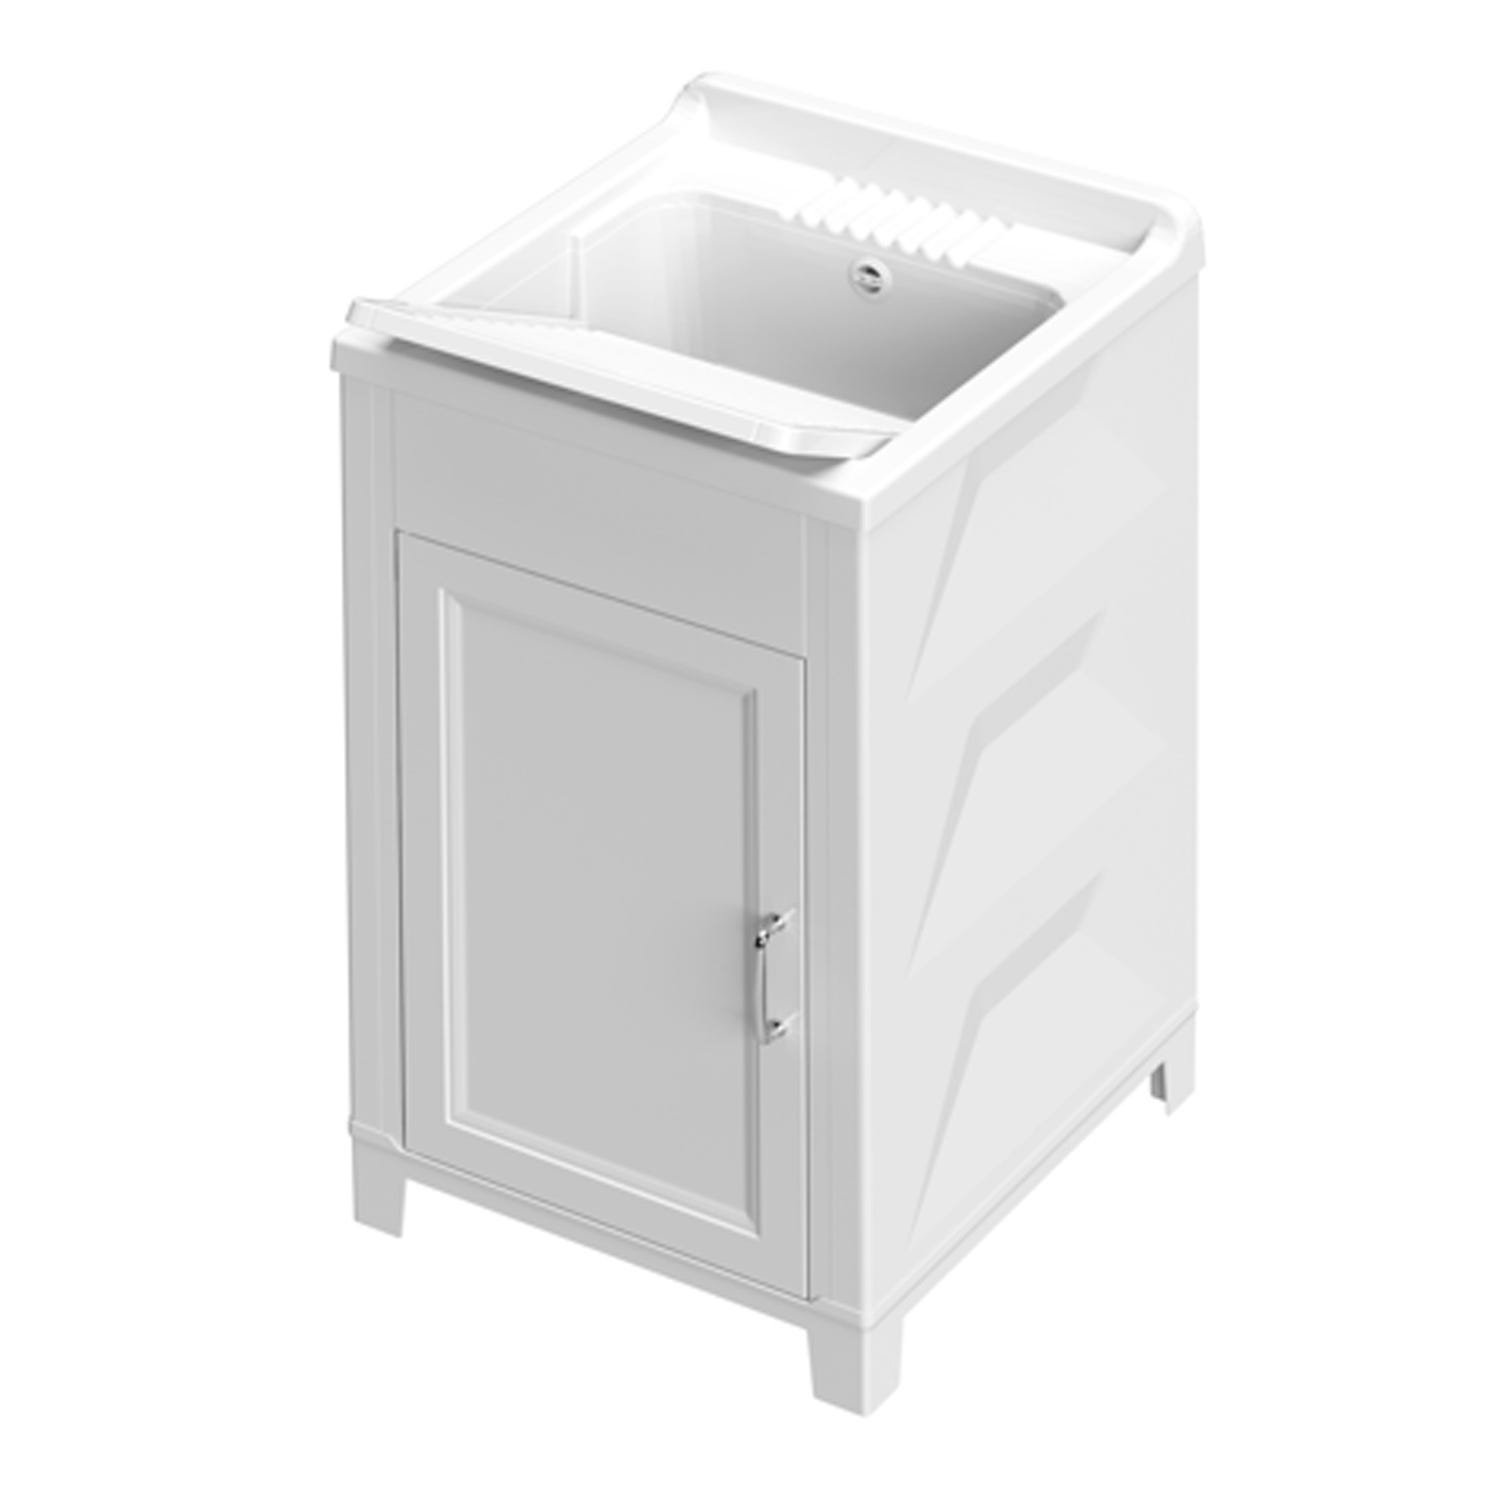 Mueble para lavadora con lavadero de resina 45x50 para interior y exterior  con fregador